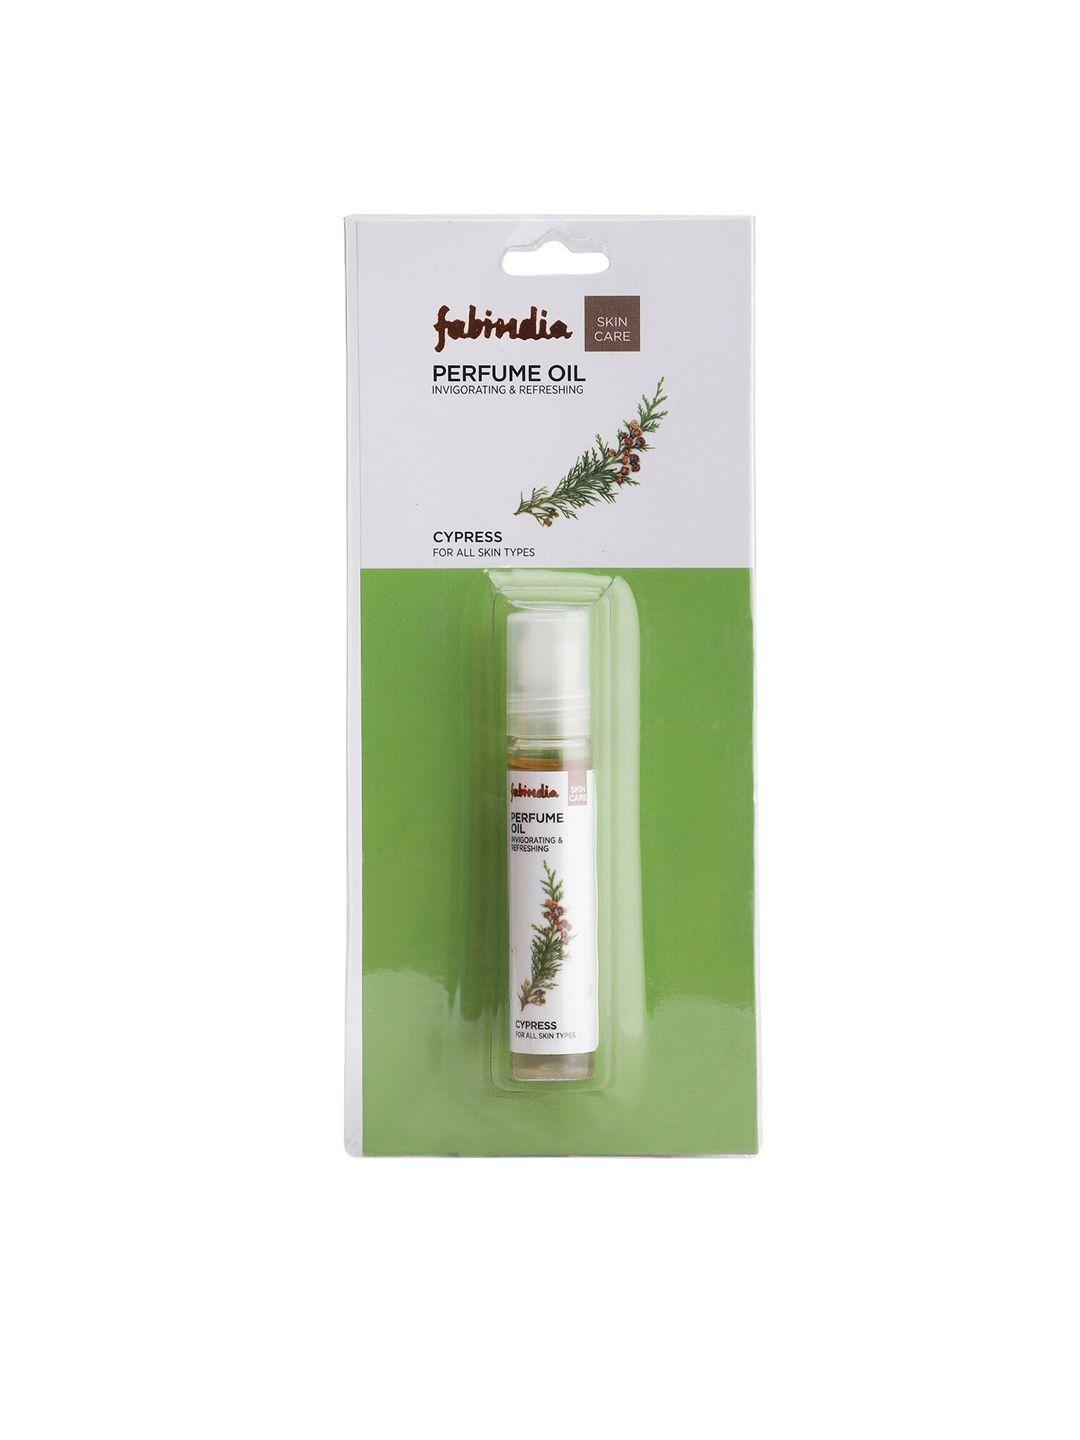 fabindia-cypress-perfume-oil-9ml